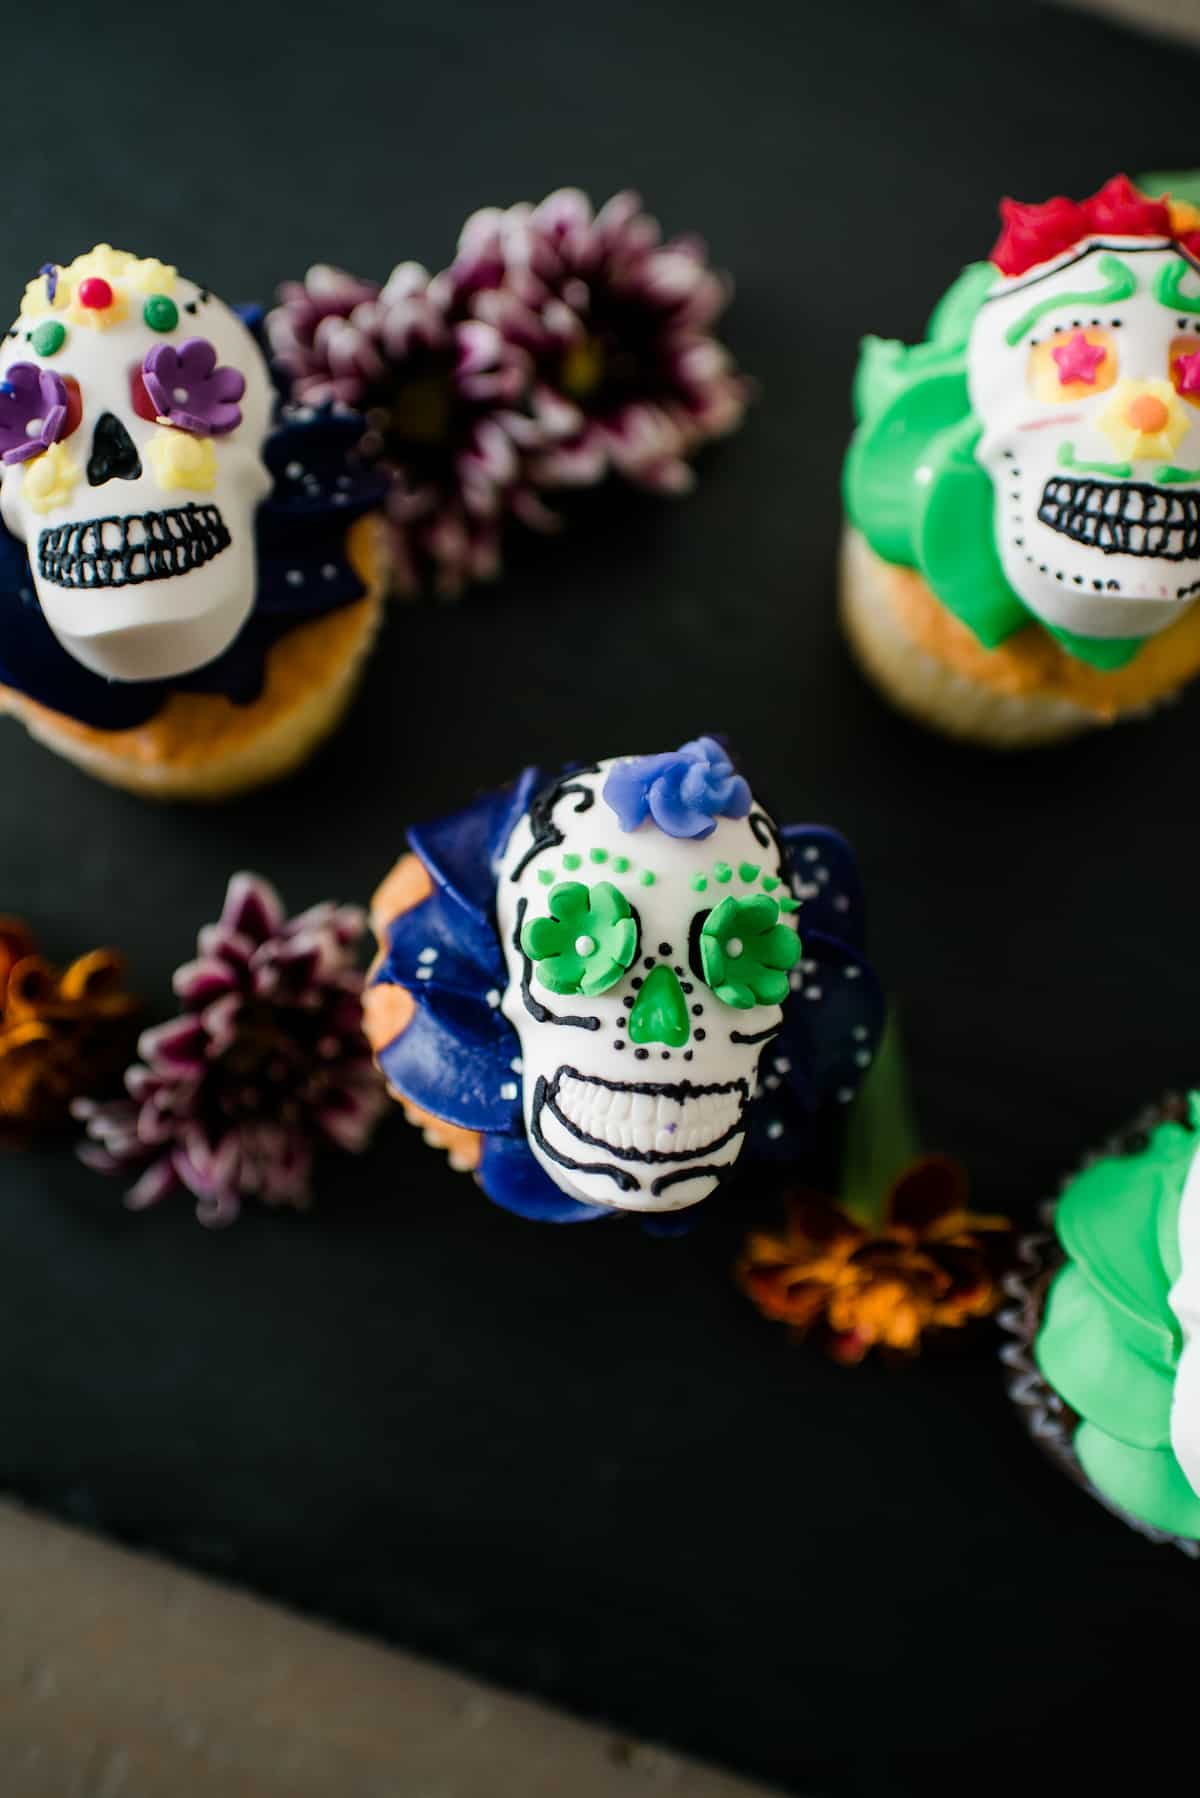 Vista aérea destas caveiras festivas DIY Dia de los Muertos decoradas com cobertura colorida e servidas em cima de um cupcake.